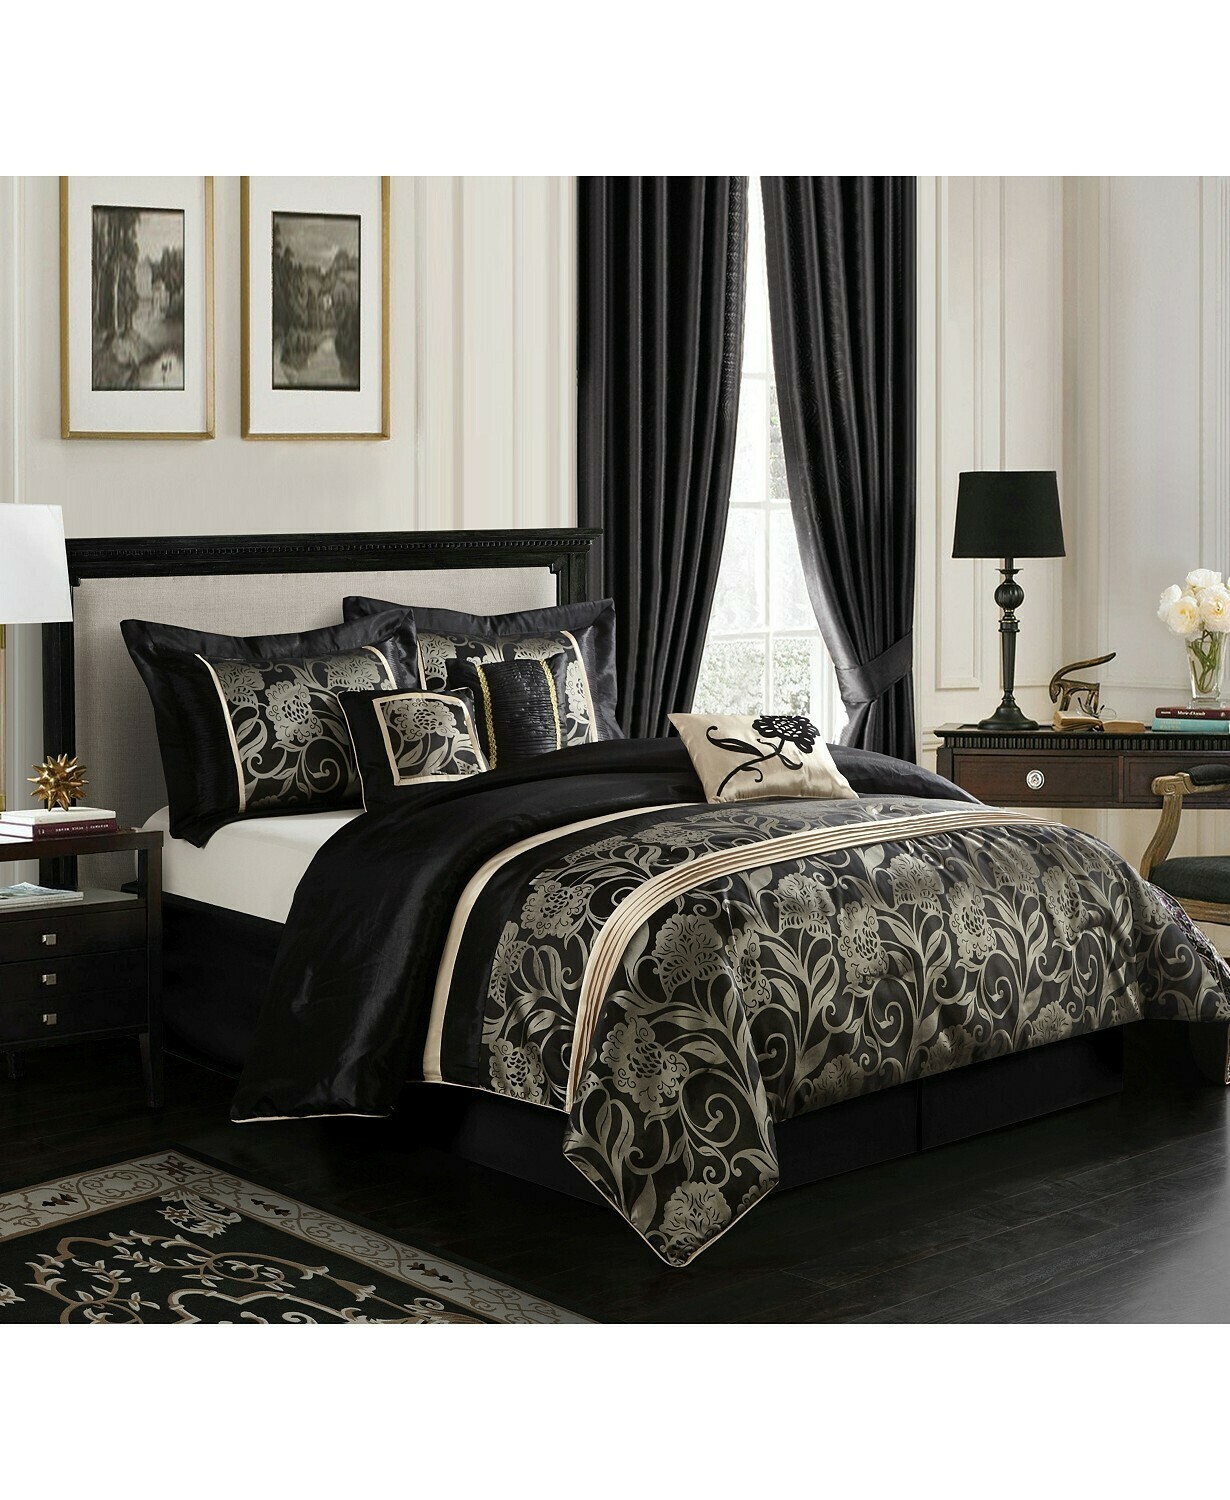 Mollybee 7-Piece Comforter Set, Black, Queen Bedding